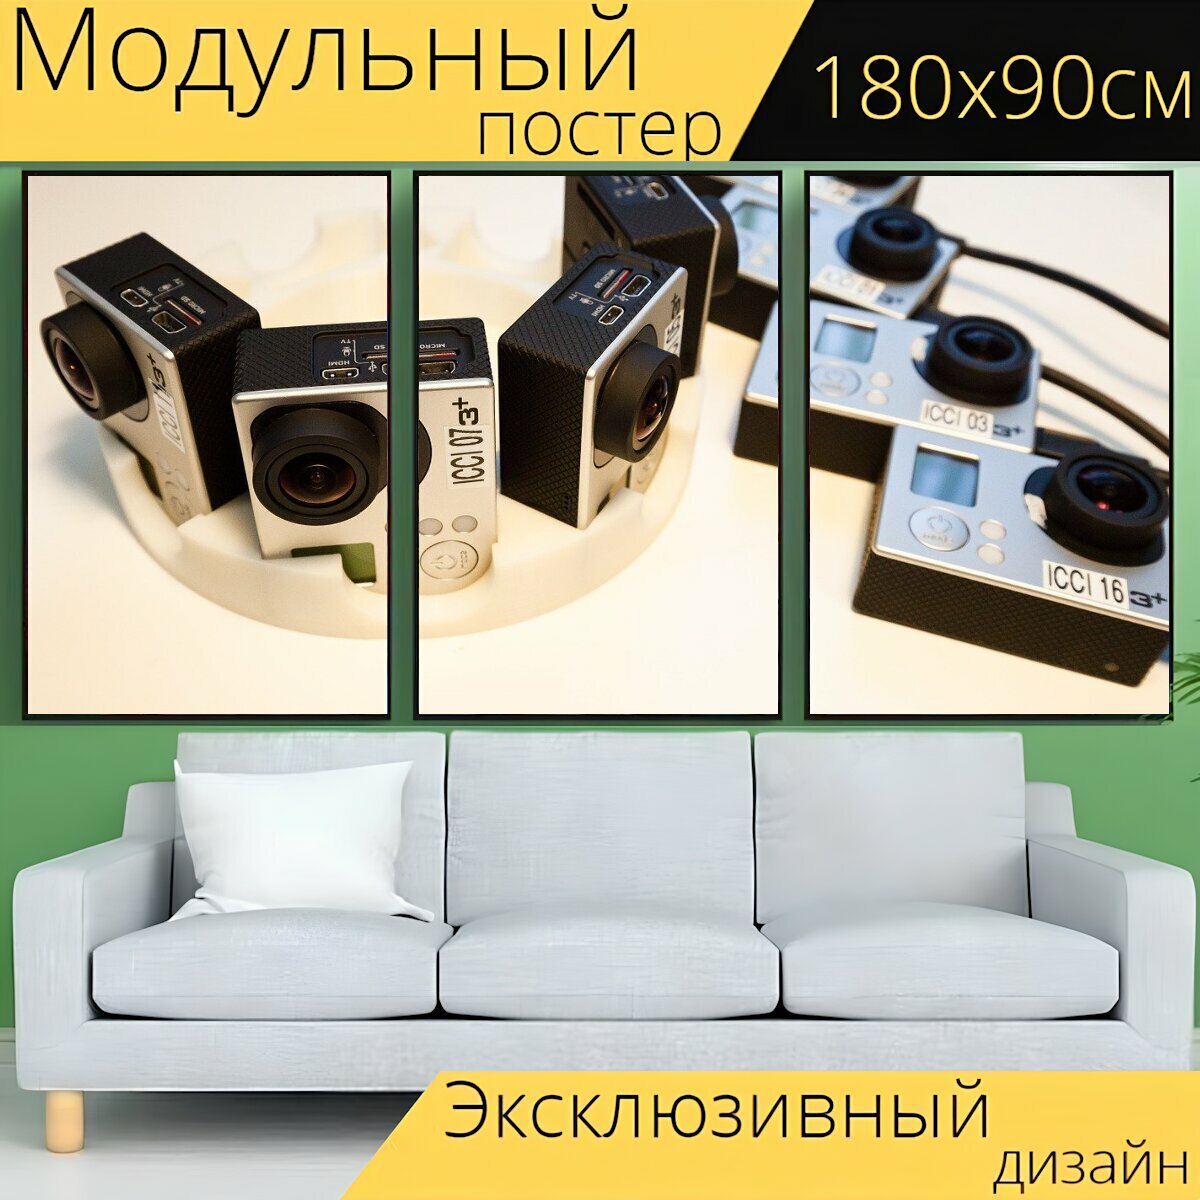 Модульный постер "Шлем камеры, фотокамеры, заряжать" 180 x 90 см. для интерьера